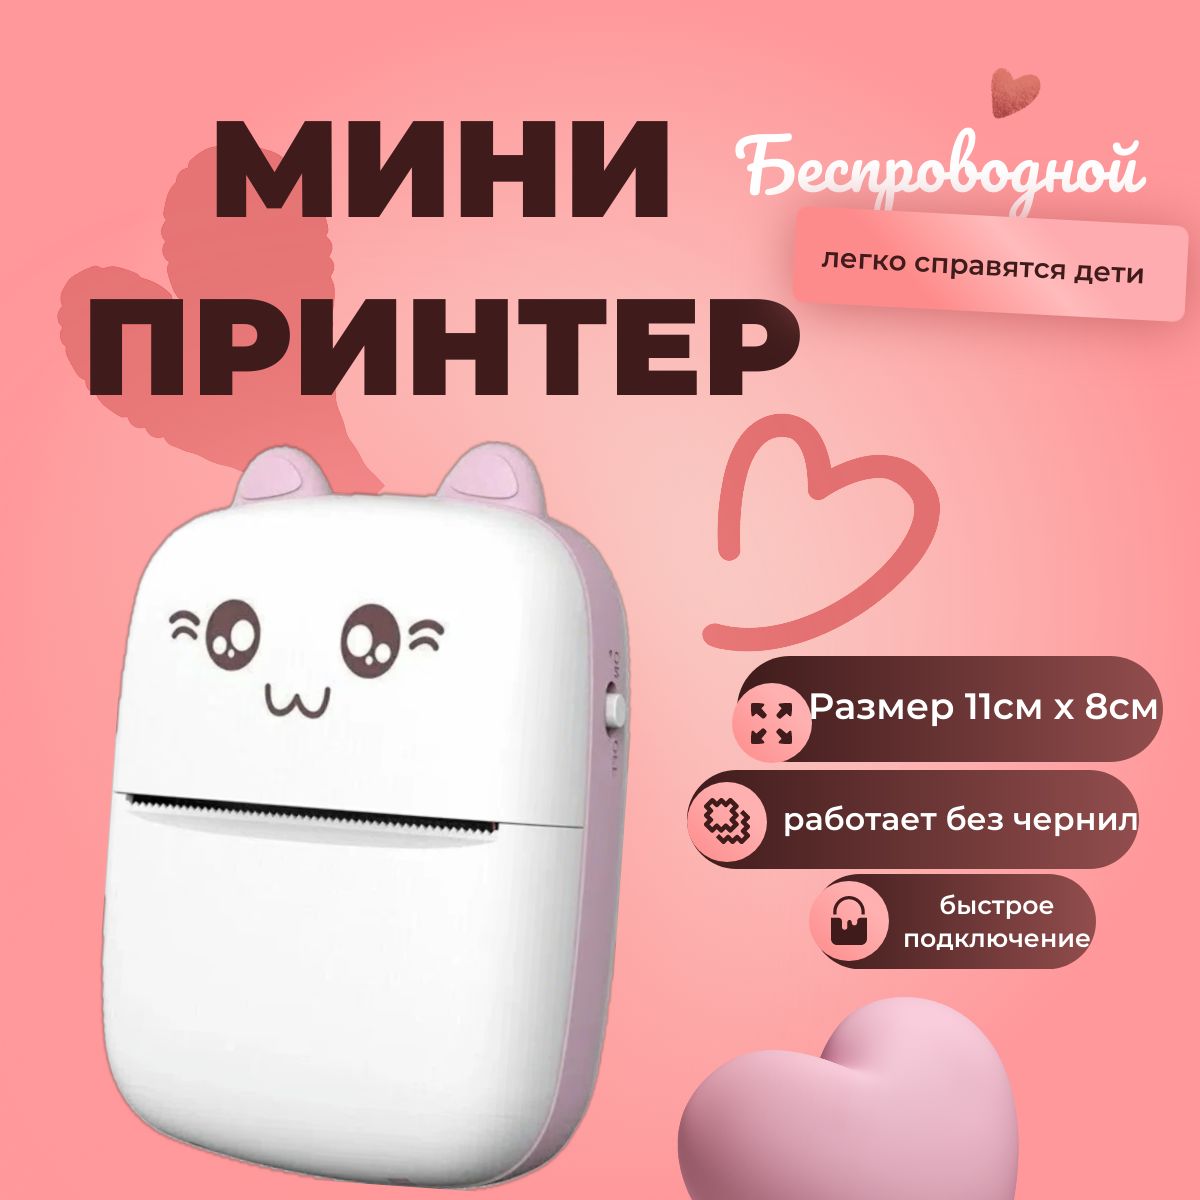 Ответы steklorez69.ru: Принтер печатает розовым. Можно ли это исправить самому и как?